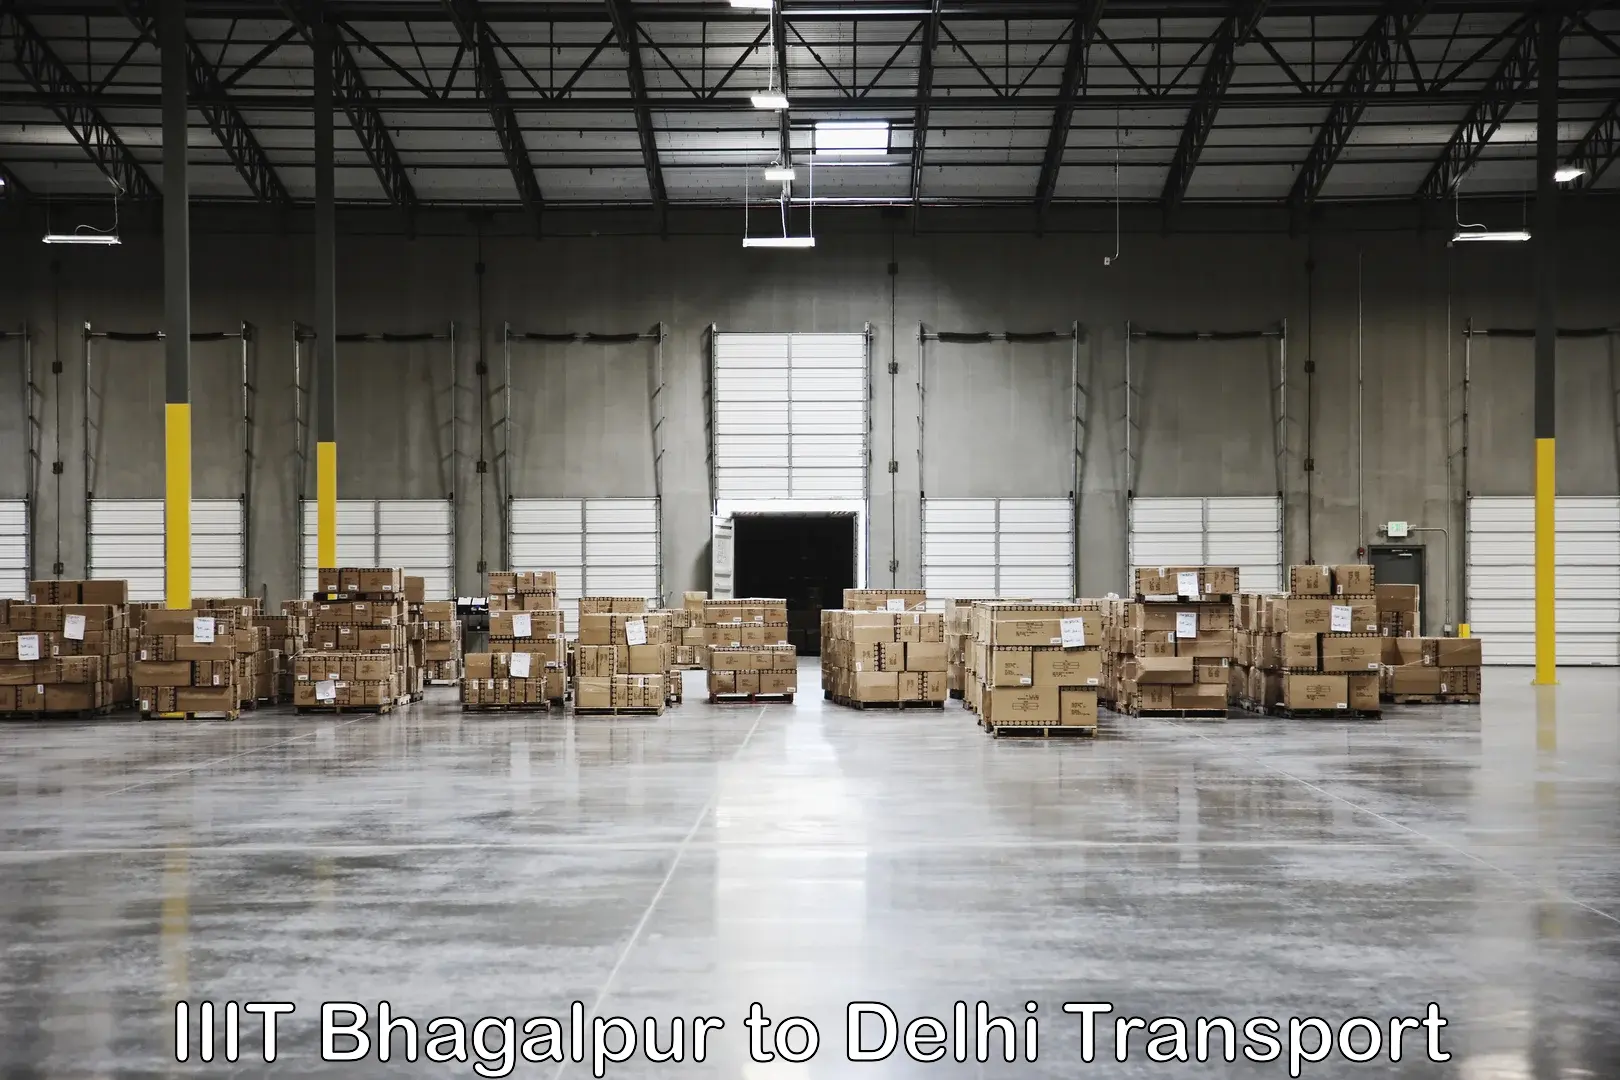 Online transport service IIIT Bhagalpur to Delhi